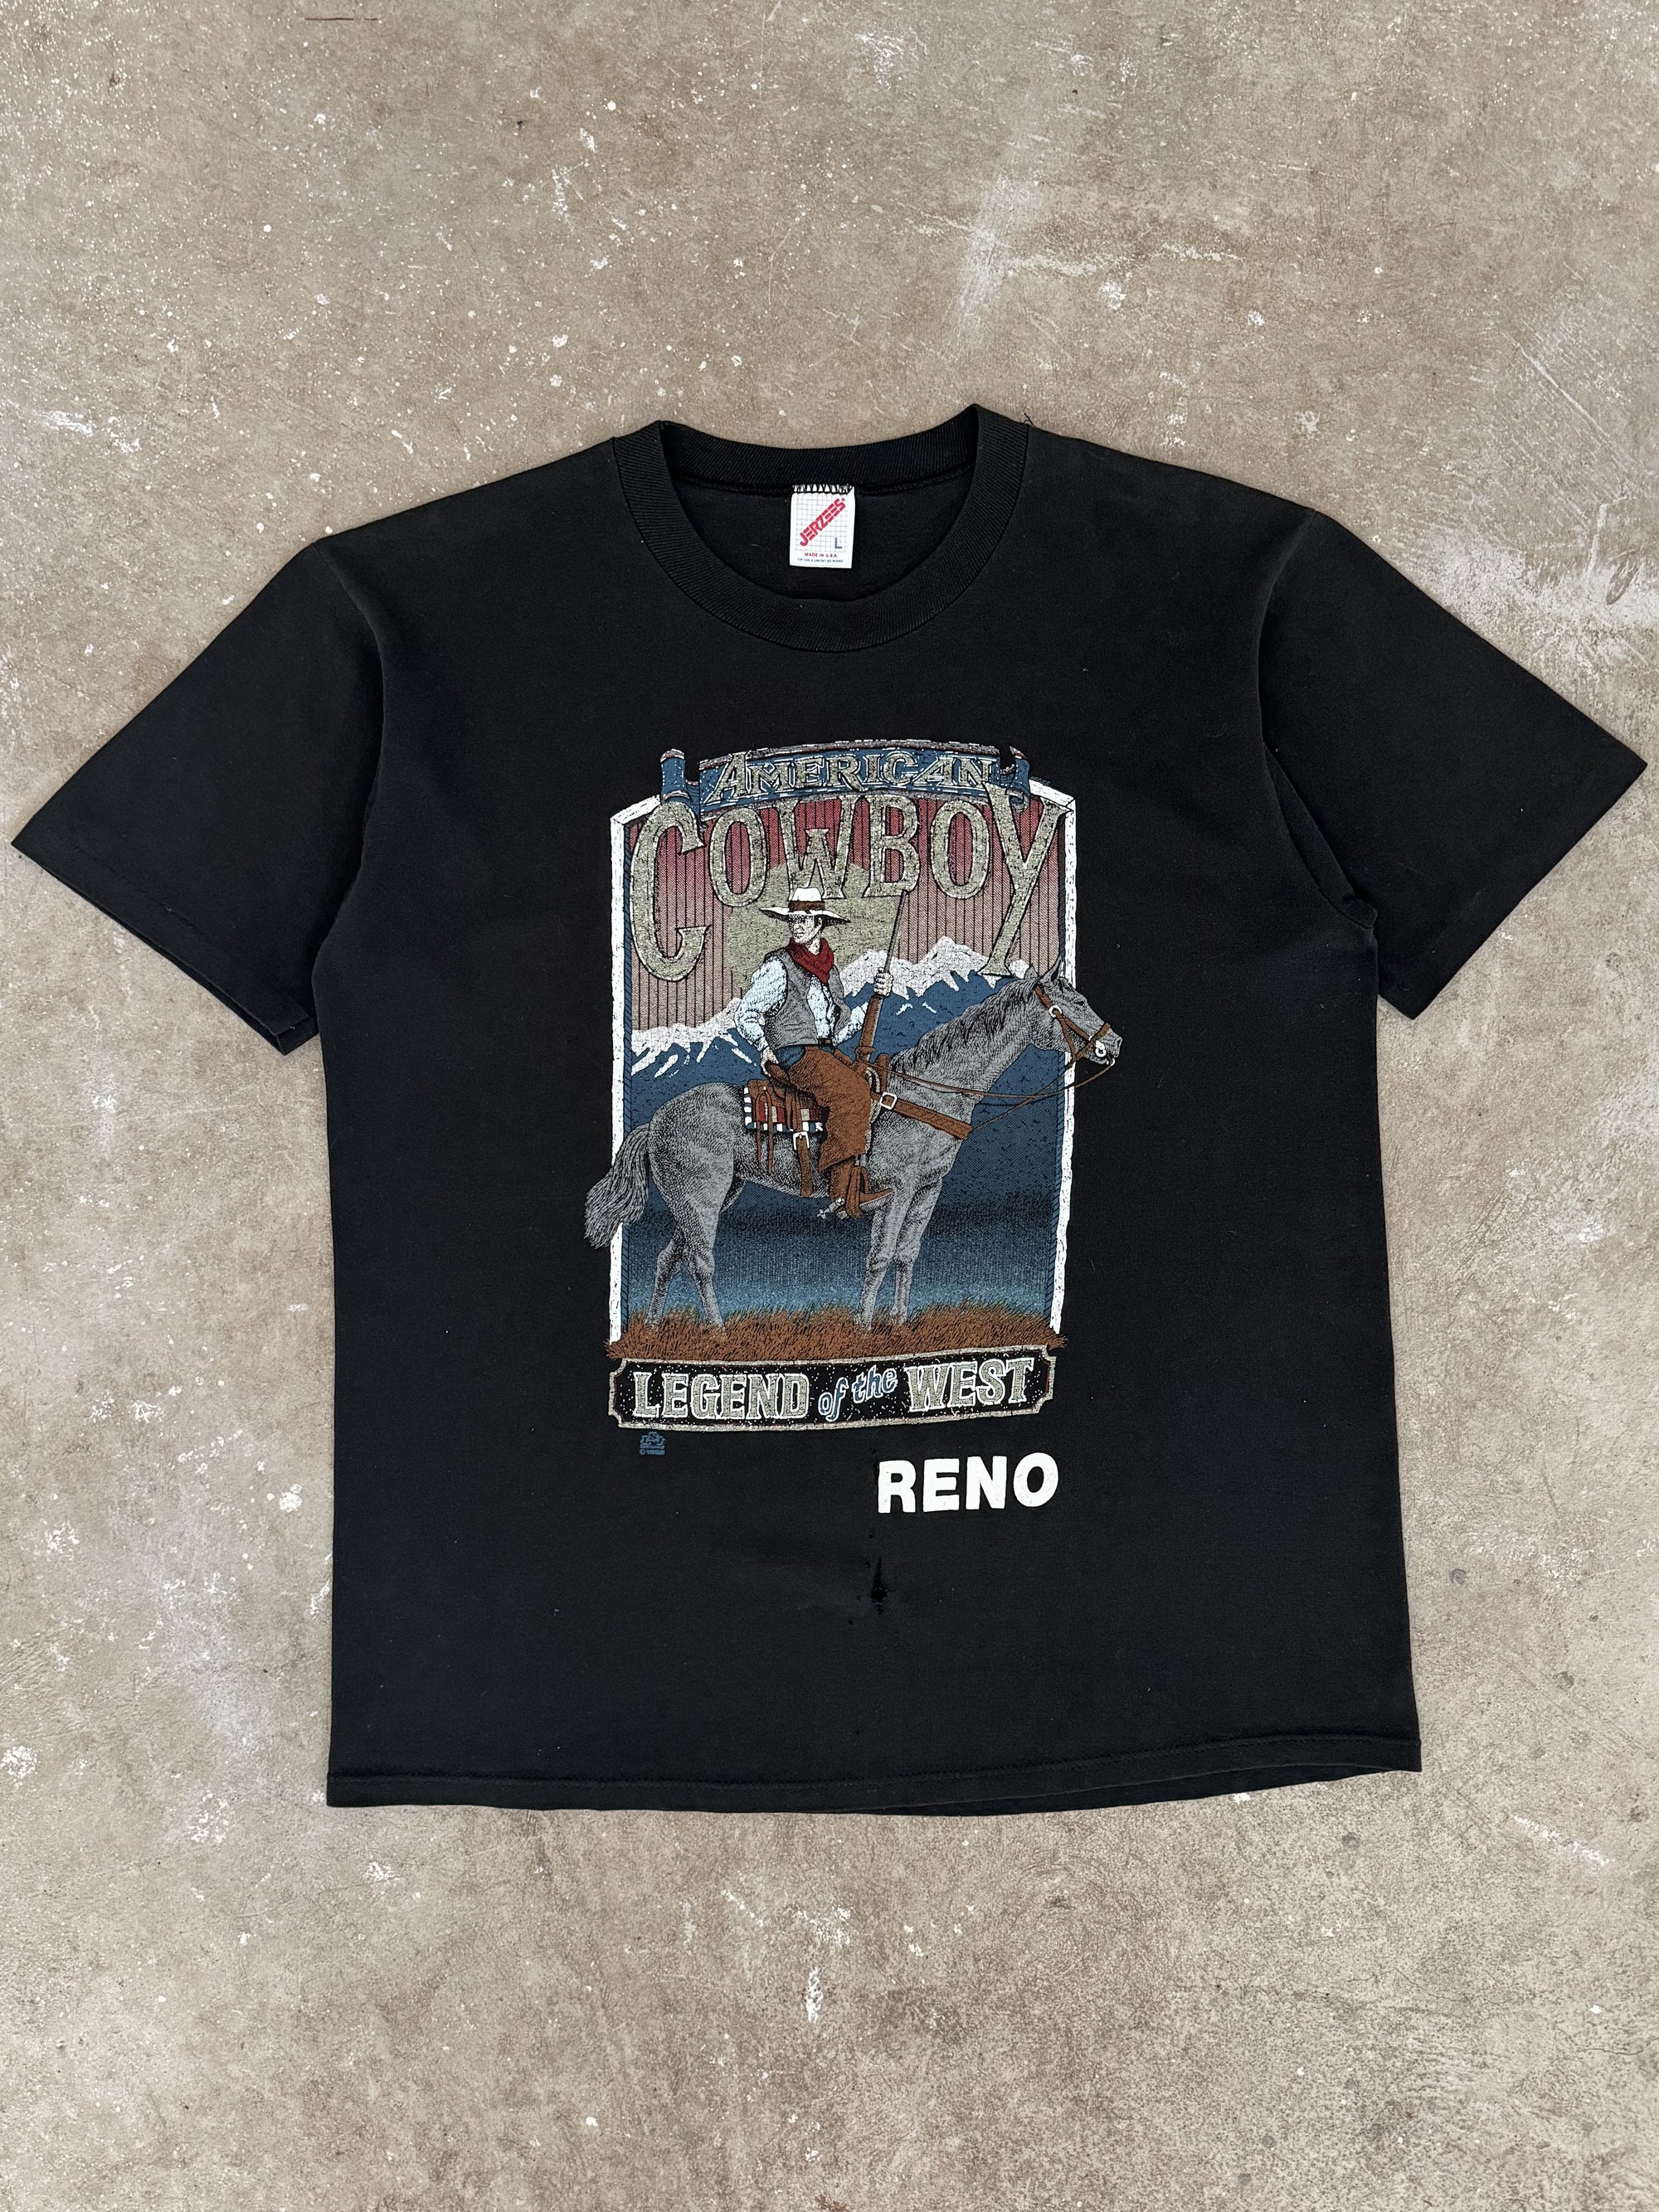 1980s/90s "American Cowboy Reno" Tee (M)